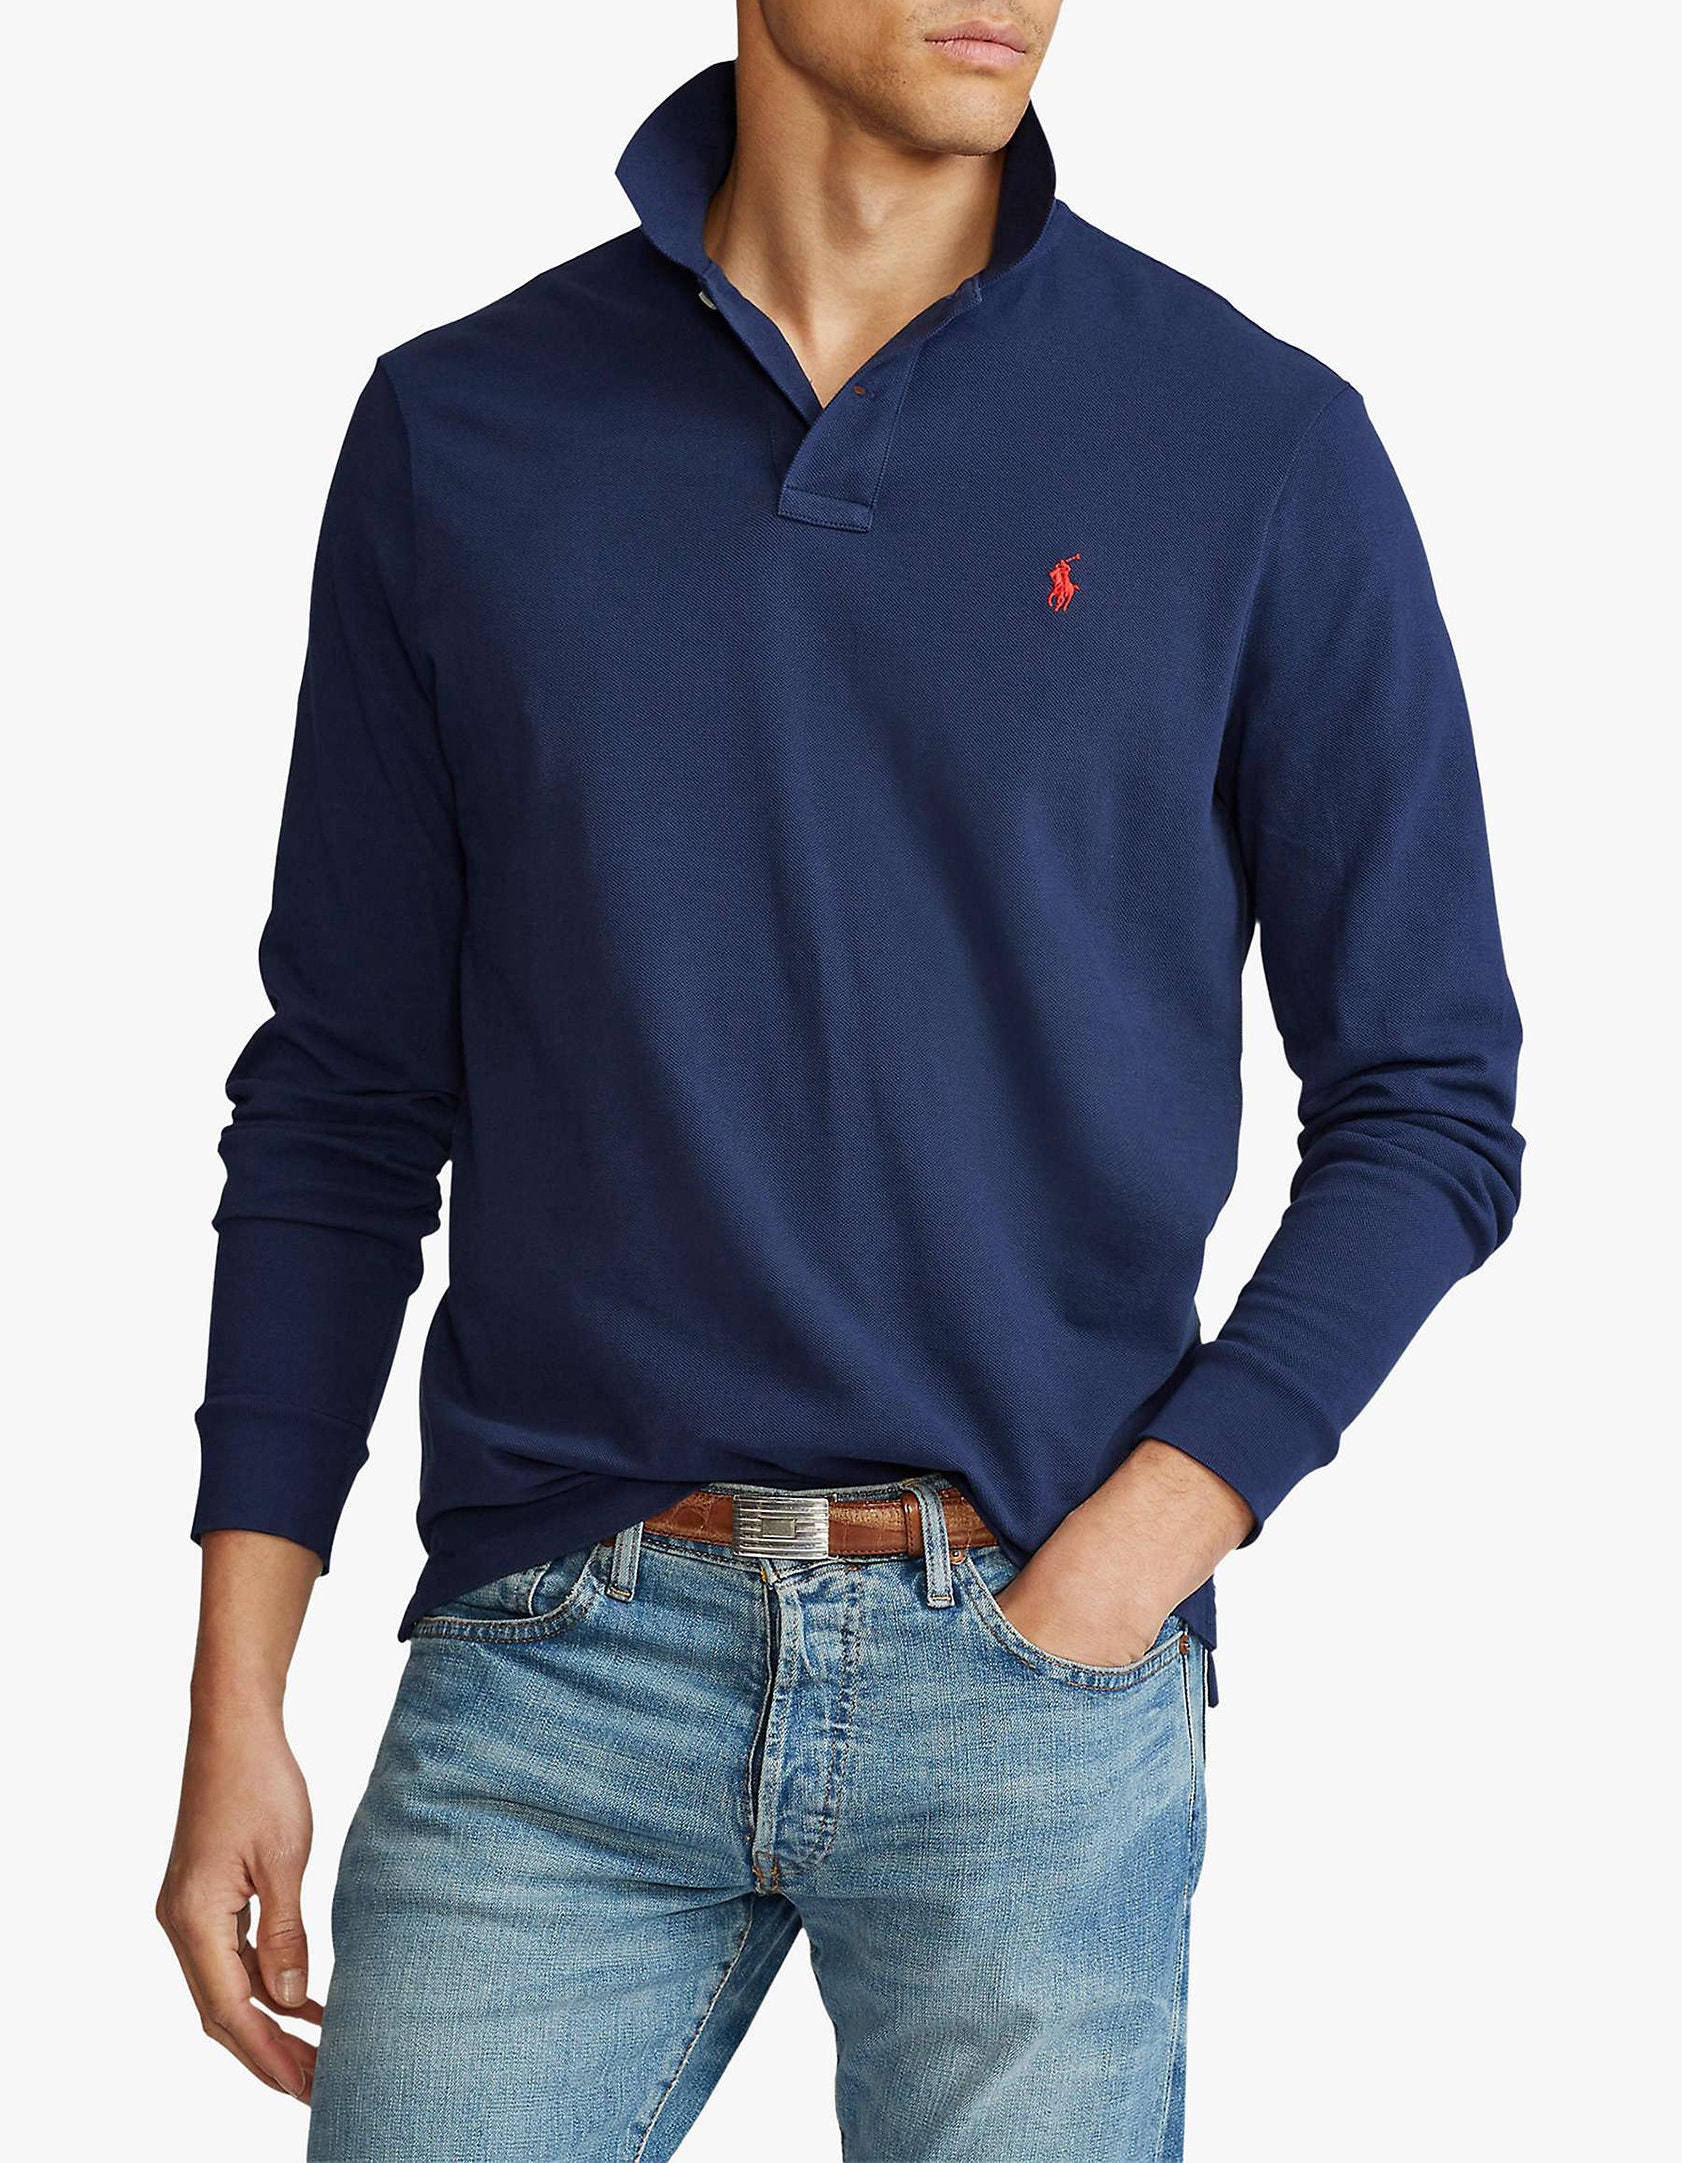 Men's Ralph Lauren Custom Fit Long Sleeve Polo Shirt - Etsy UK